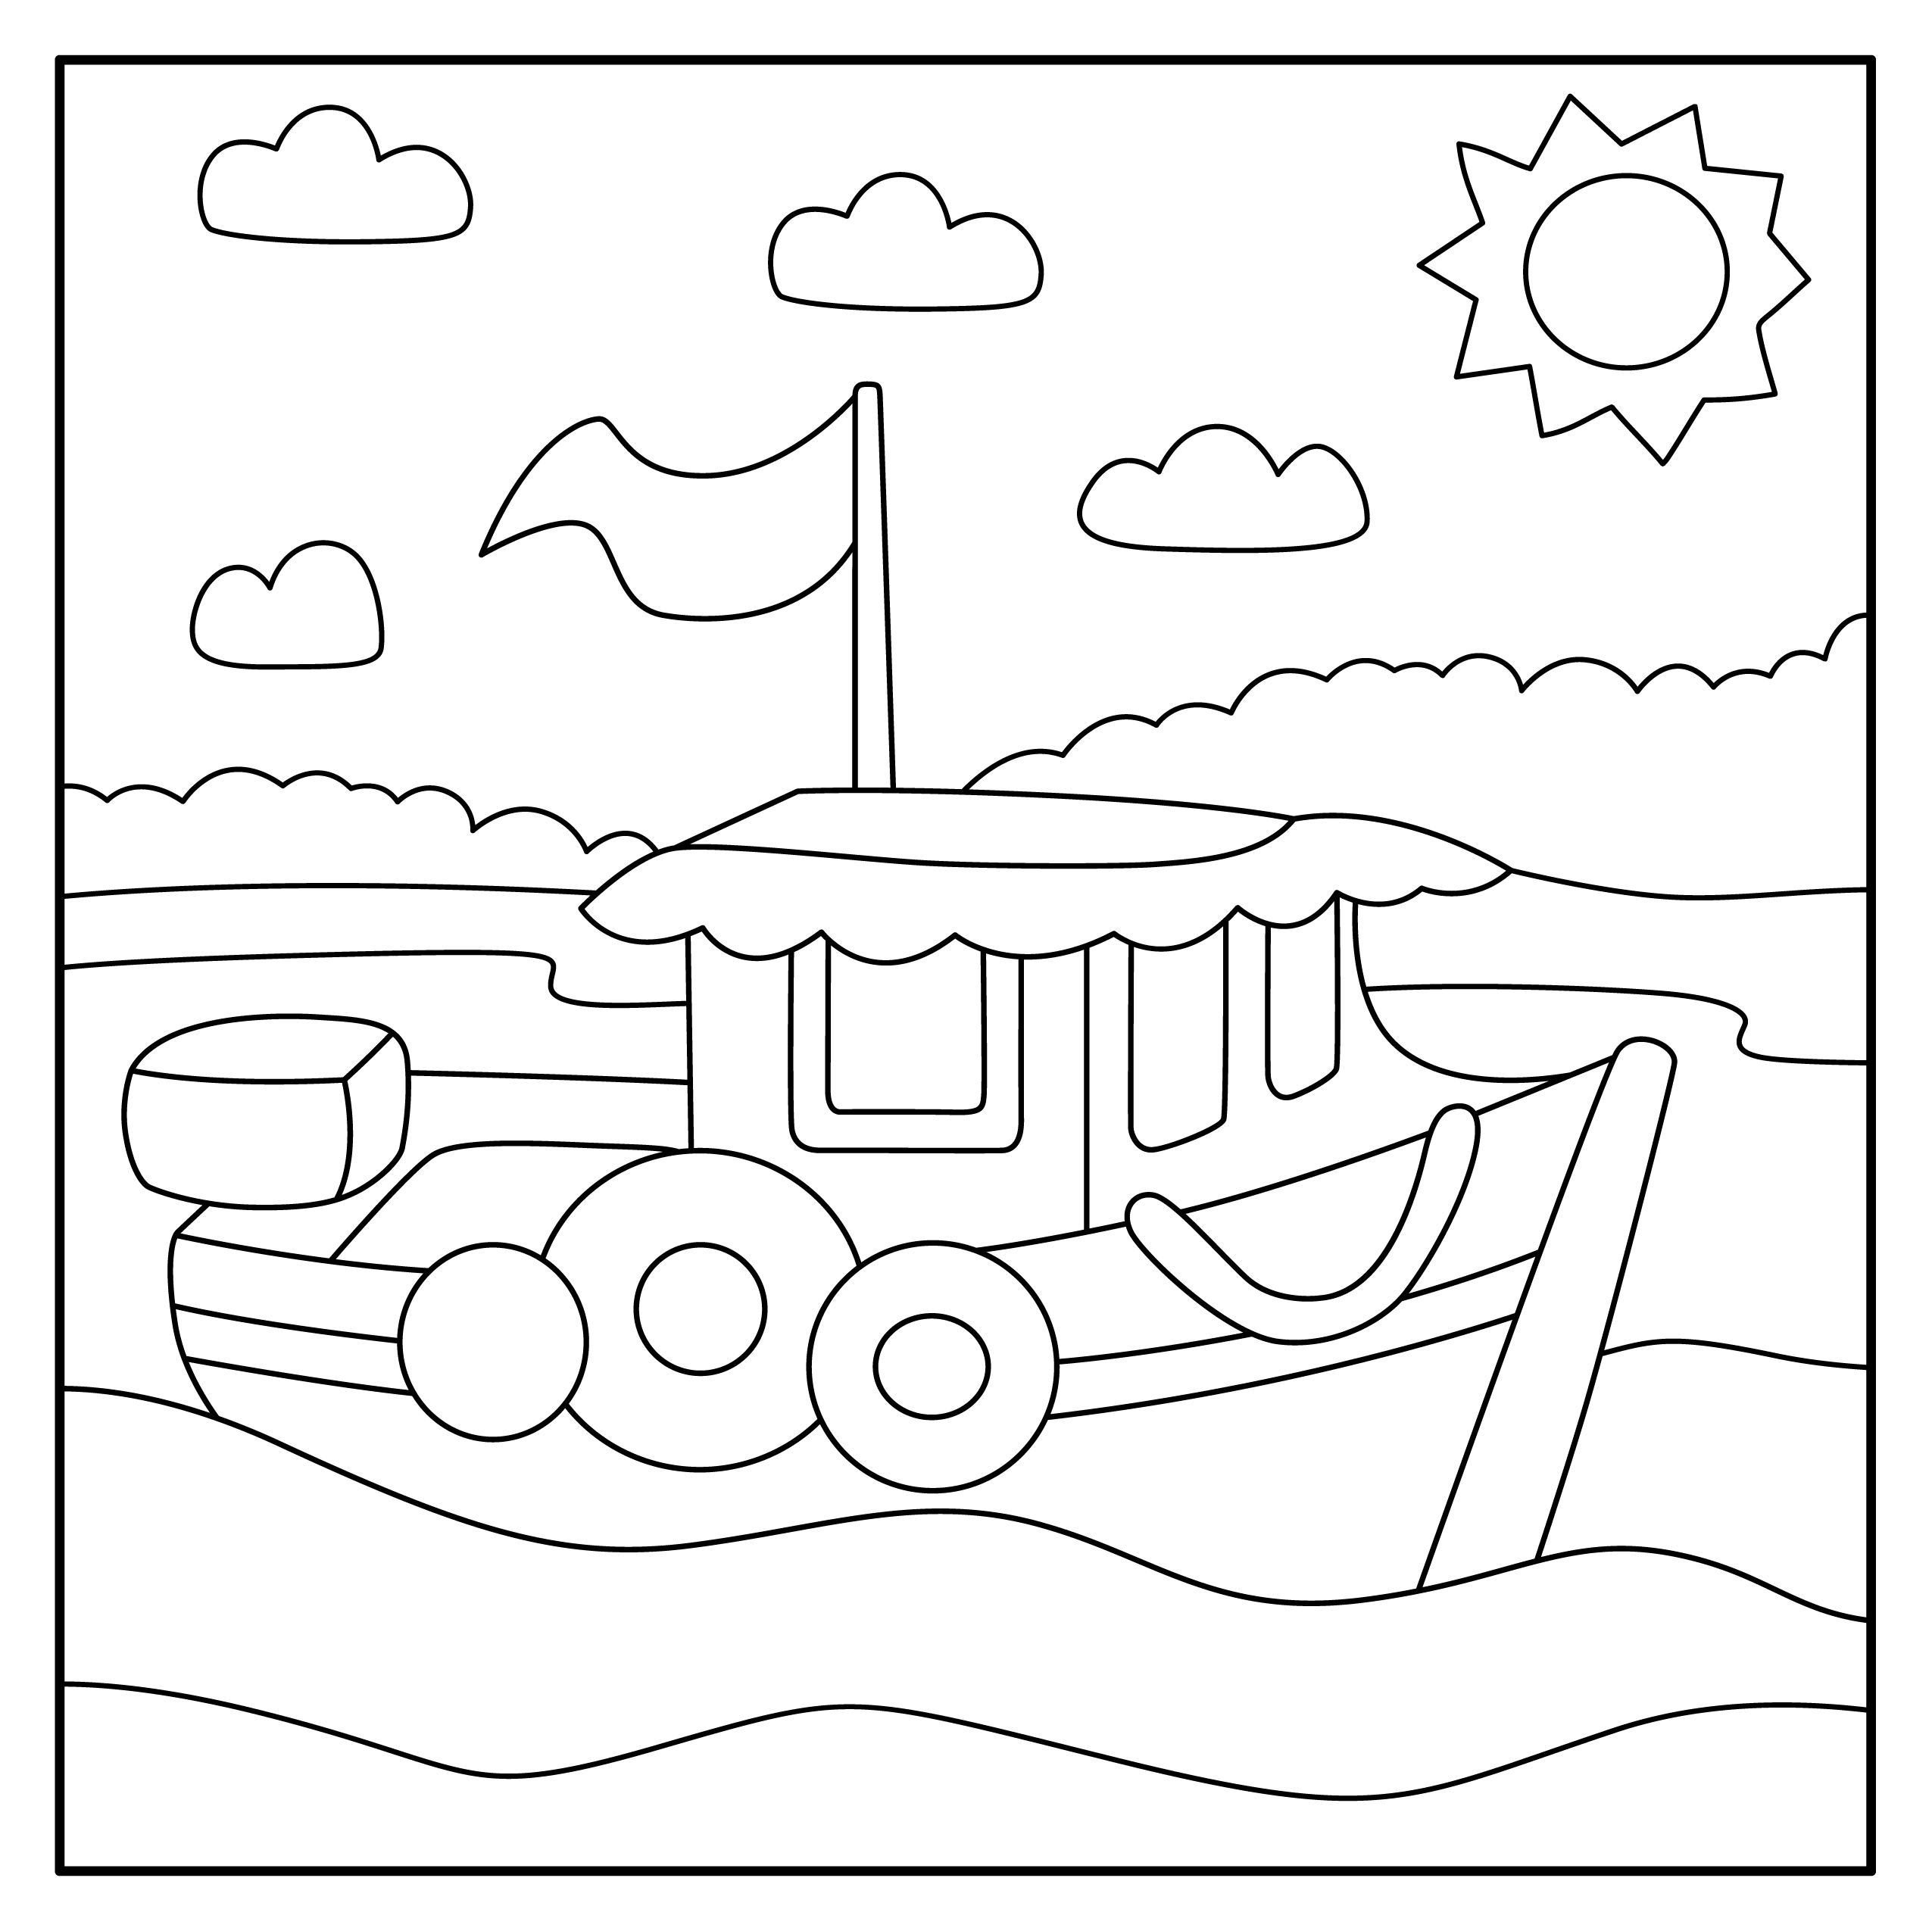 Раскраска корабль с флагом «Морские приключения» формата А4 в высоком качестве